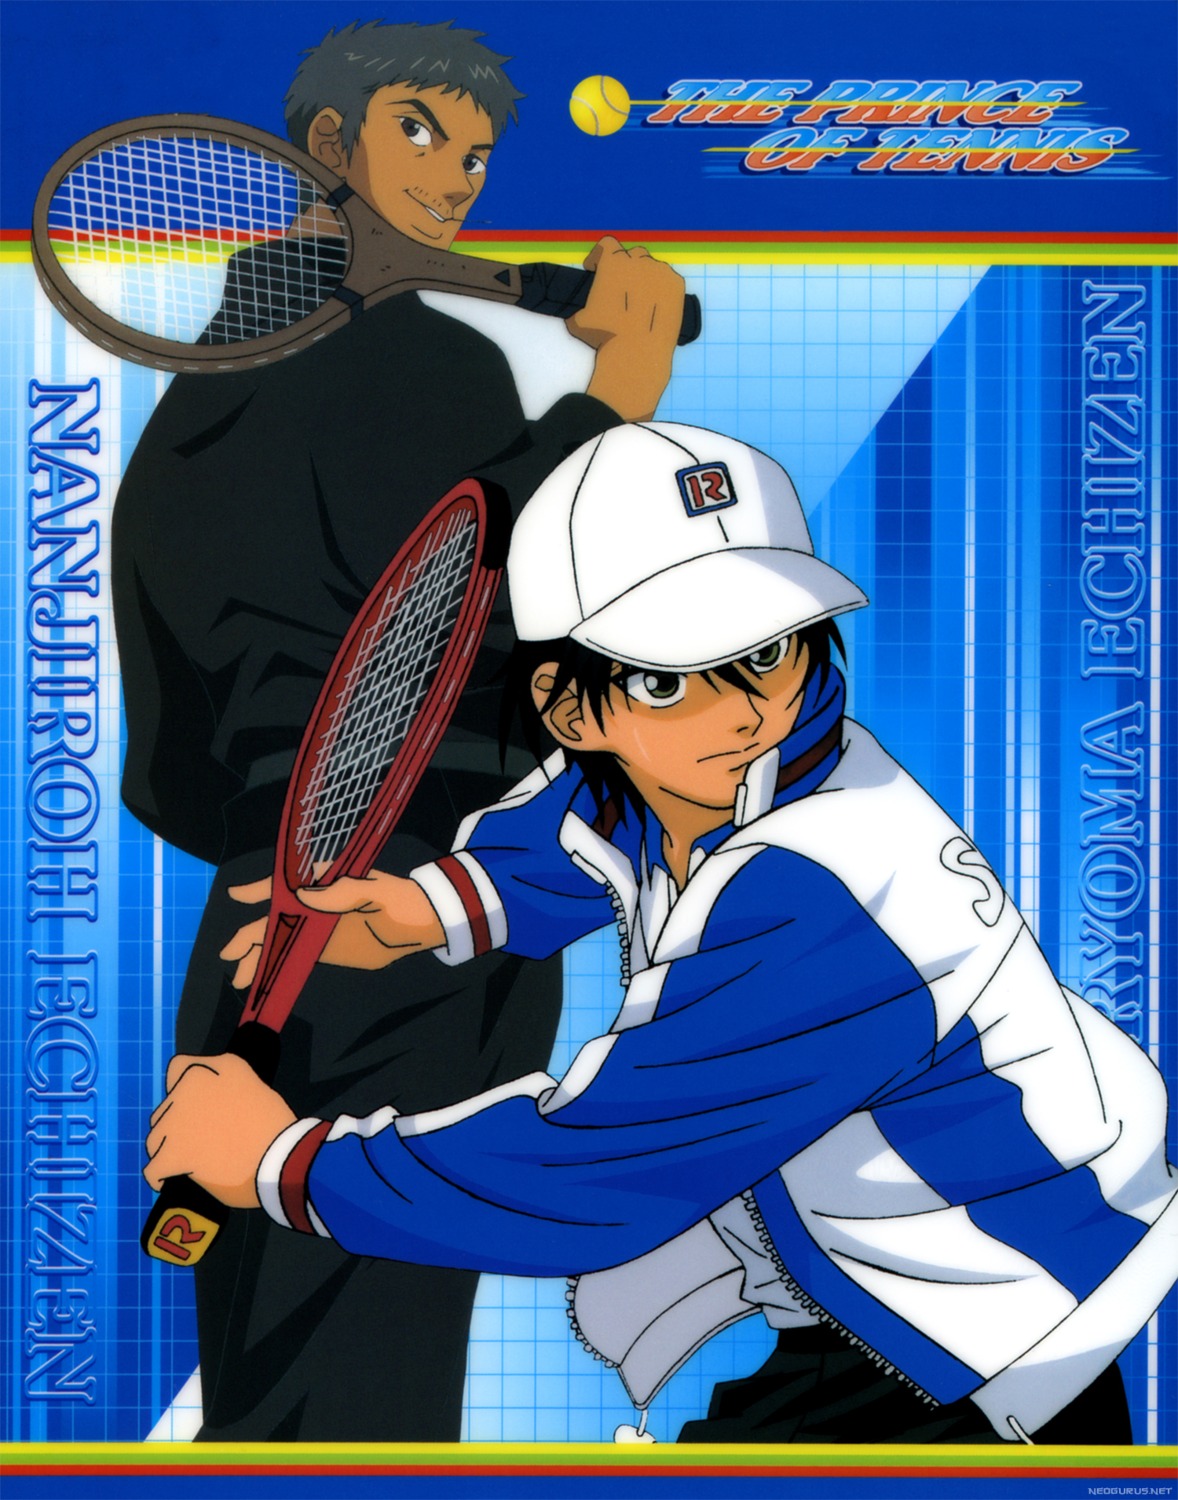 echizen_nanjiro echizen_ryoma male prince_of_tennis screening tennis